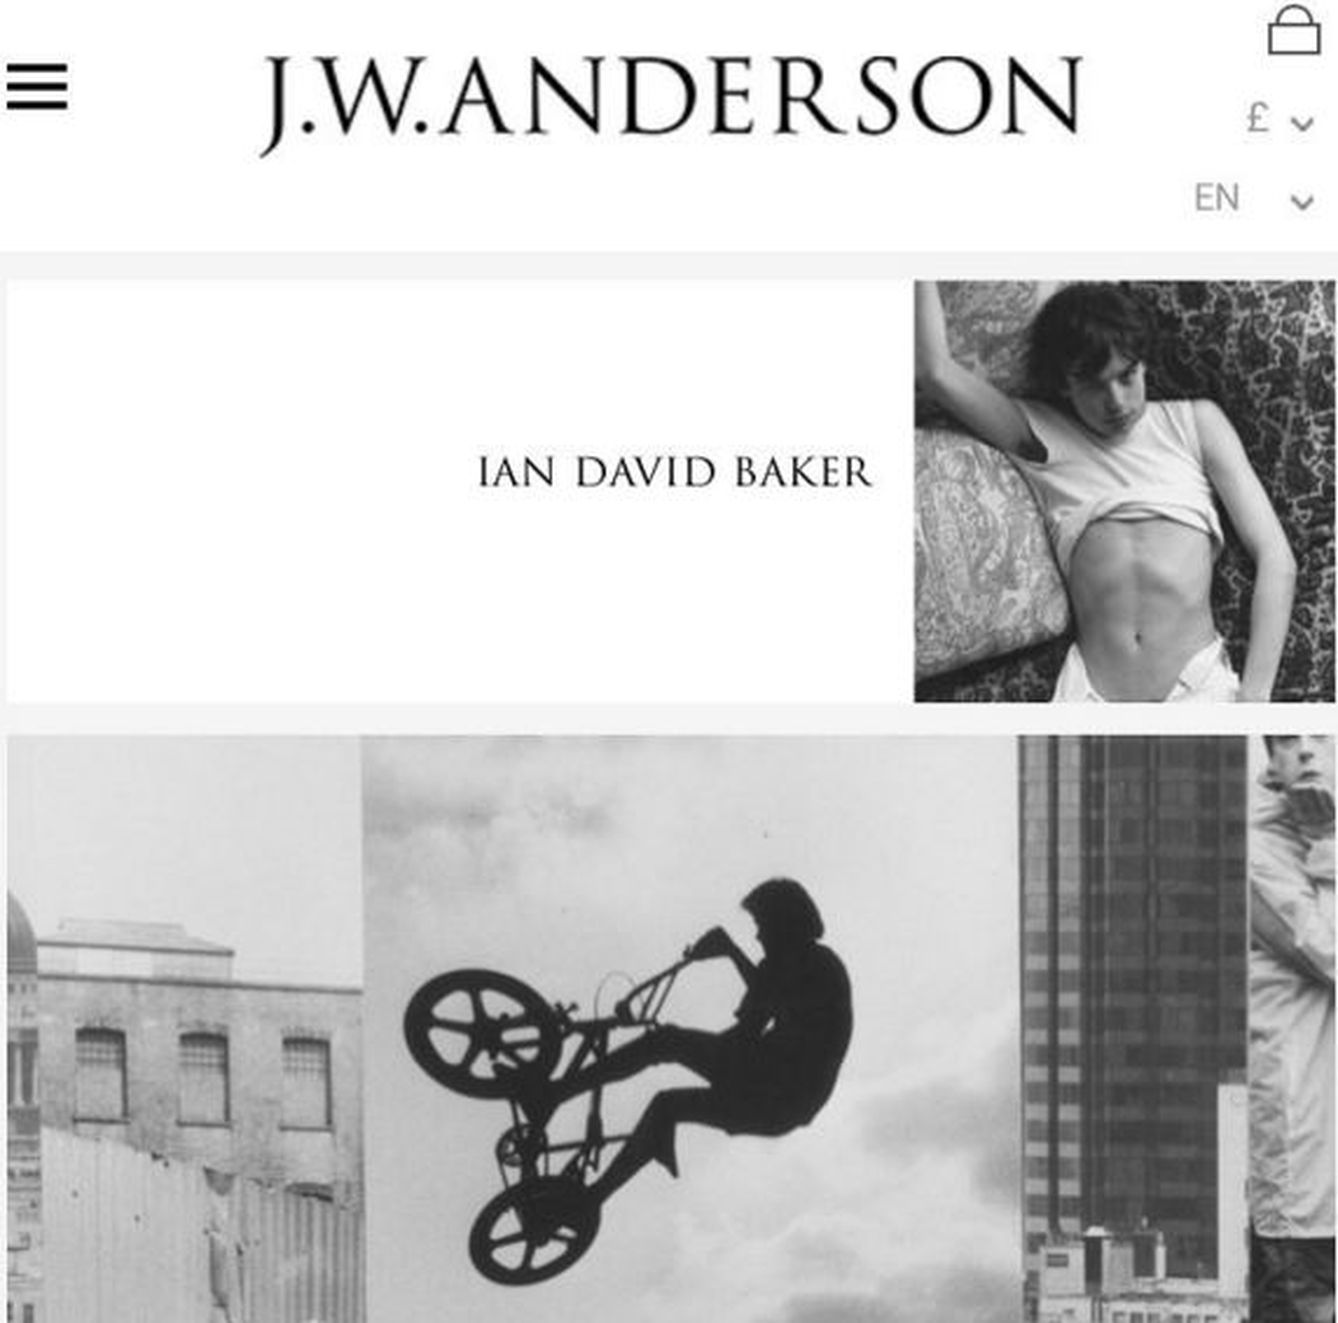 Jonathan Anderson ha vendido en su web el trabajo del fotógrafo de culto gay David Baker